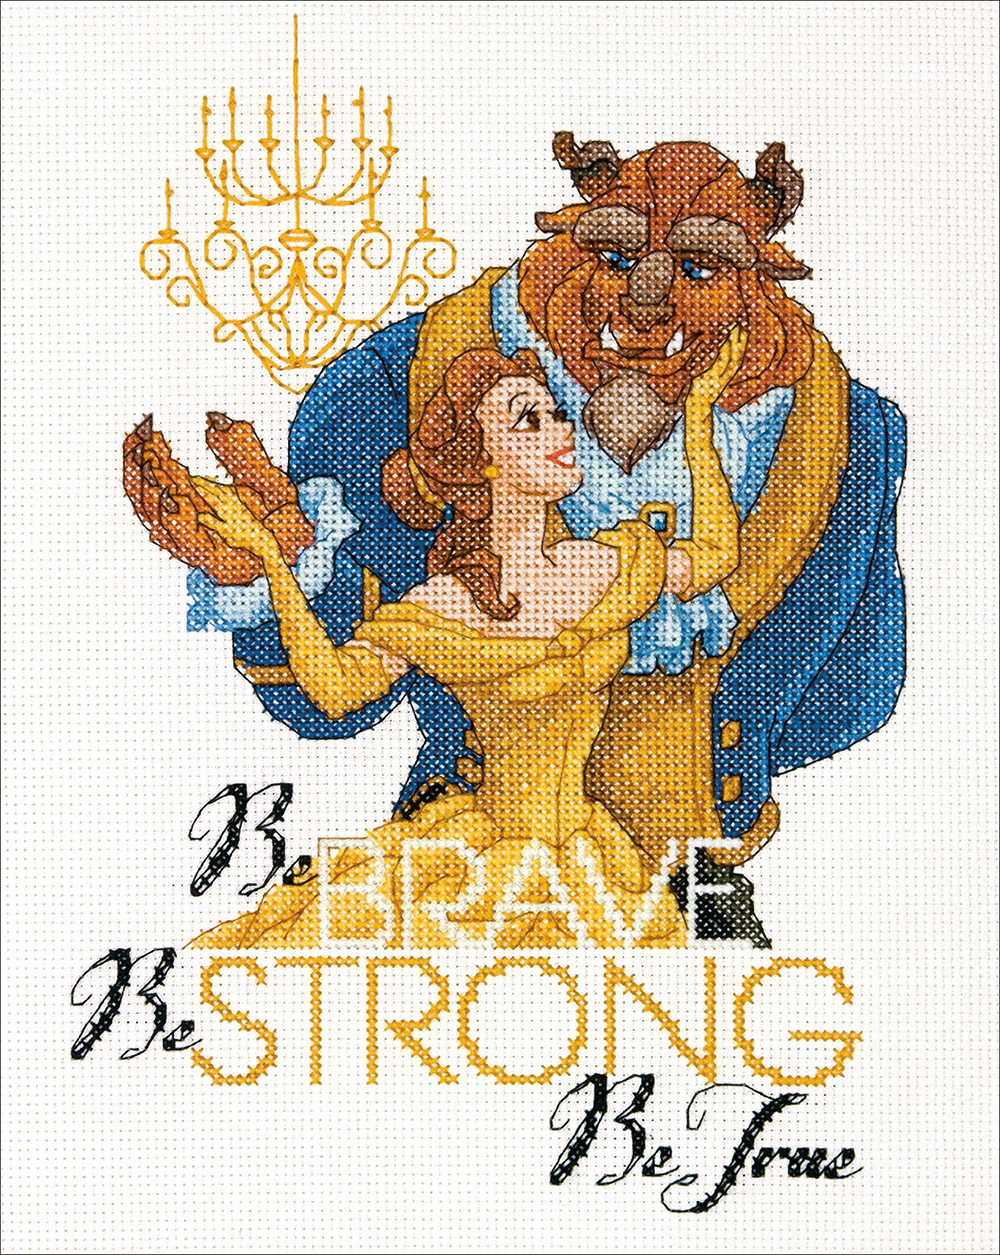 Disney Princess Cross Stitch Kit - Be Brave by Dimensions Cross Stitch